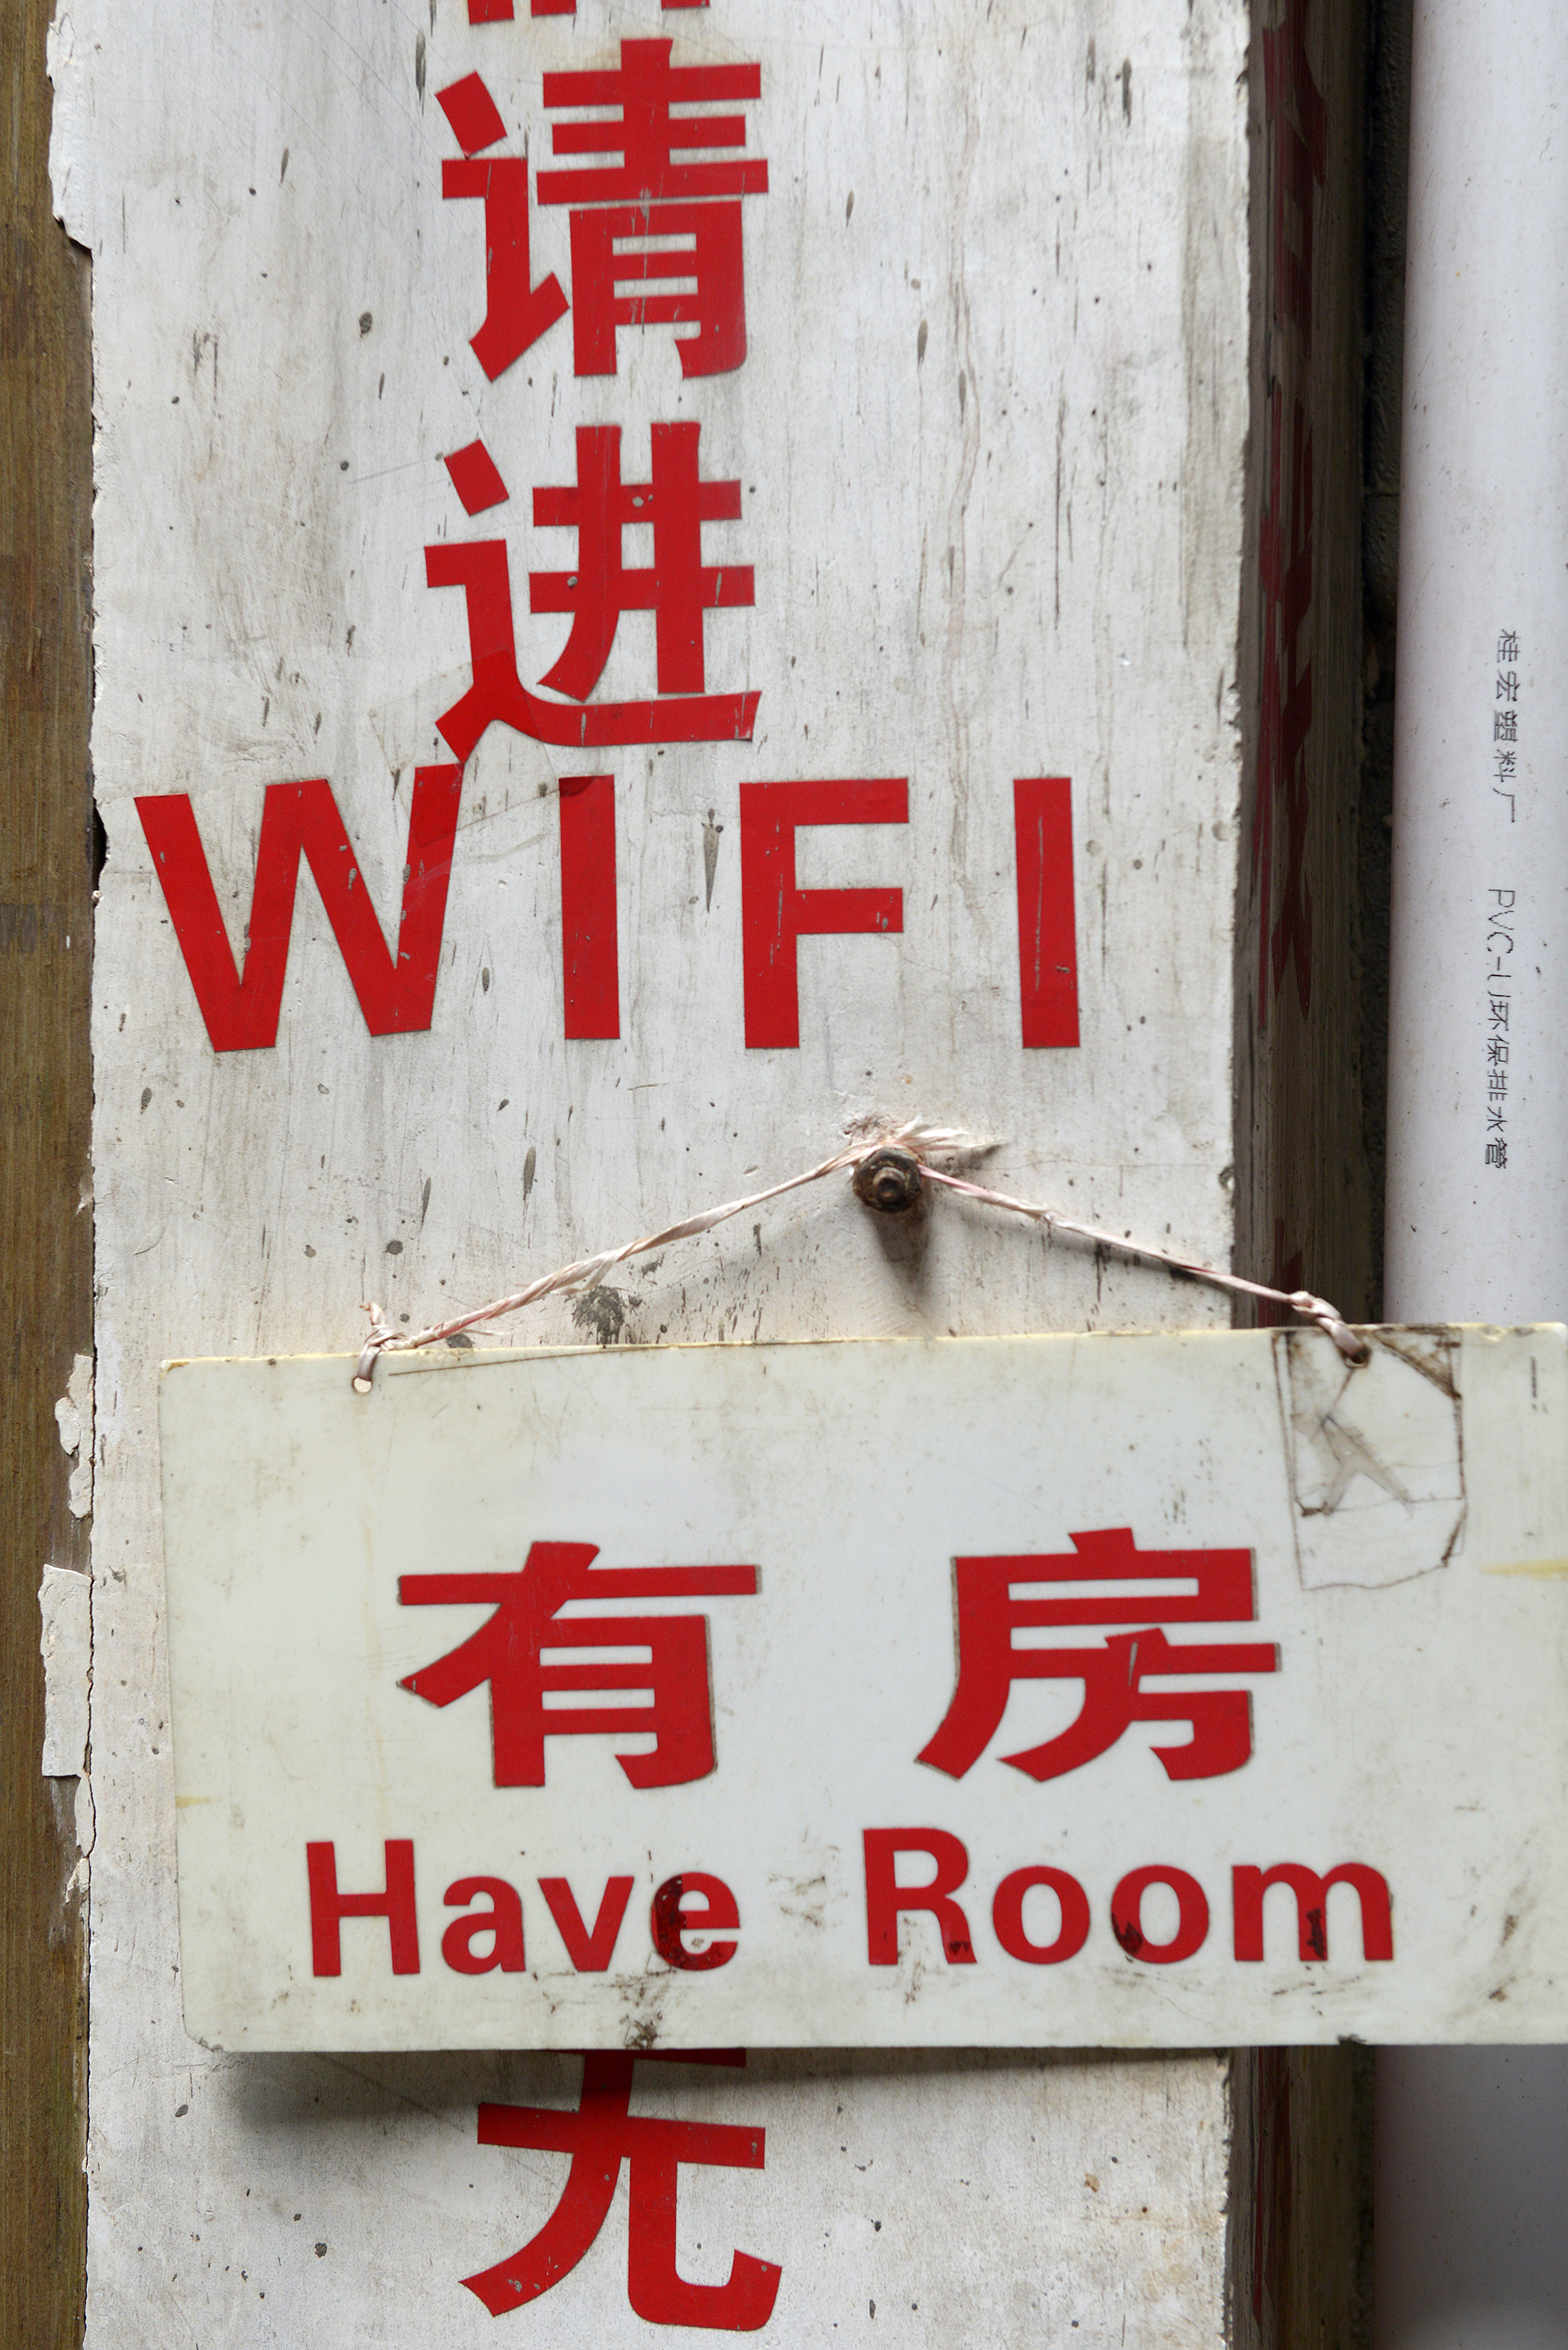 Wifi, characters, China